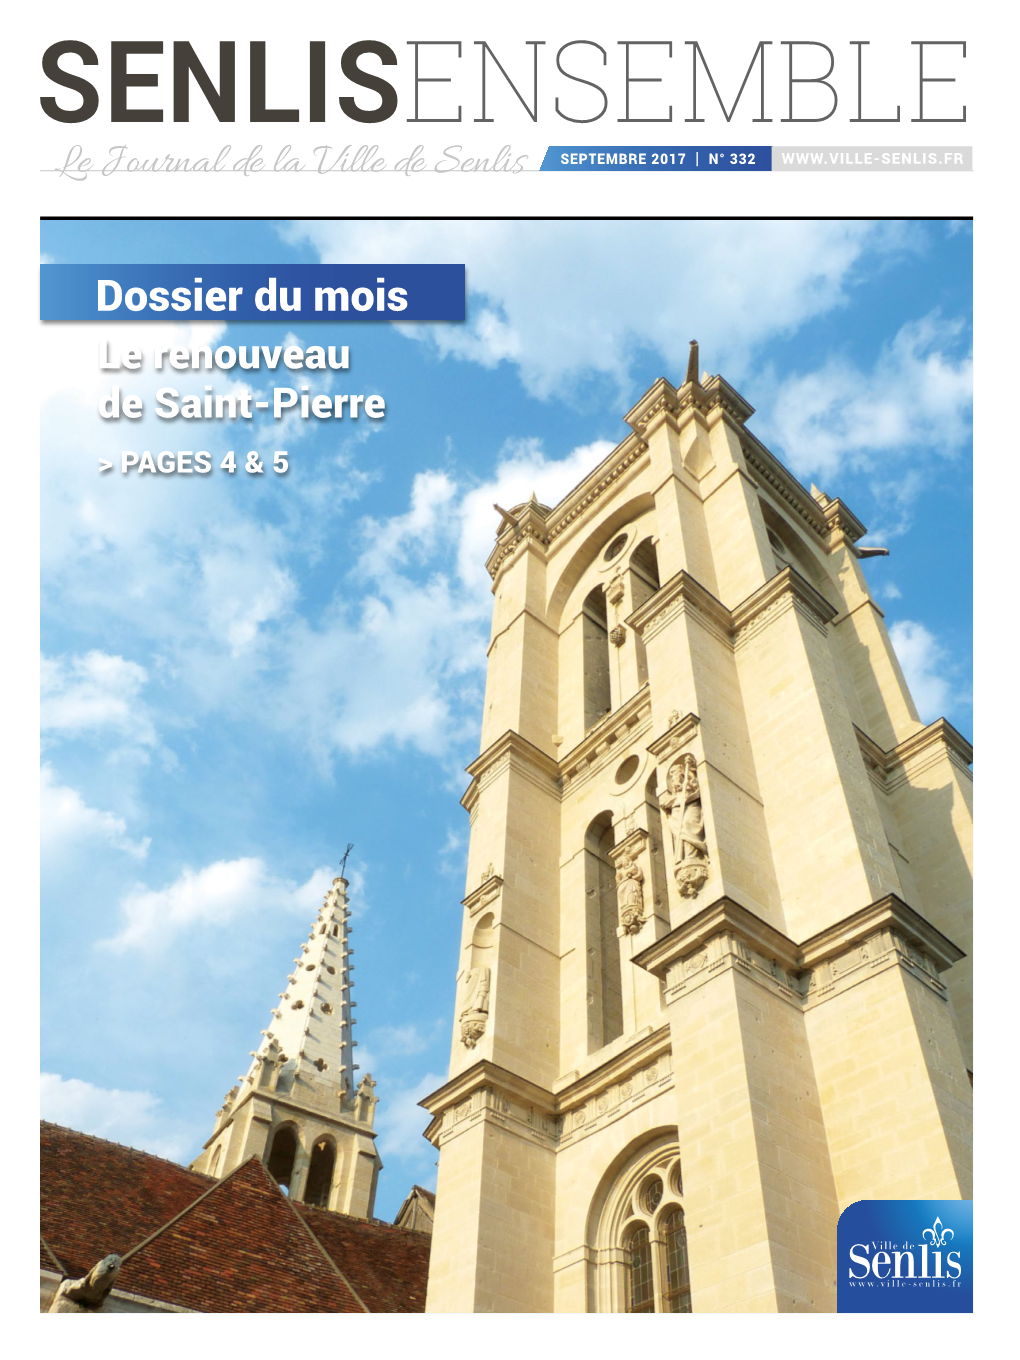 Dossier Du Mois Le Renouveau De Saint-Pierre > PAGES 4 & 5 SENLIS 17 Mise En Page 1 25/07/17 11:16 Page2 Co1